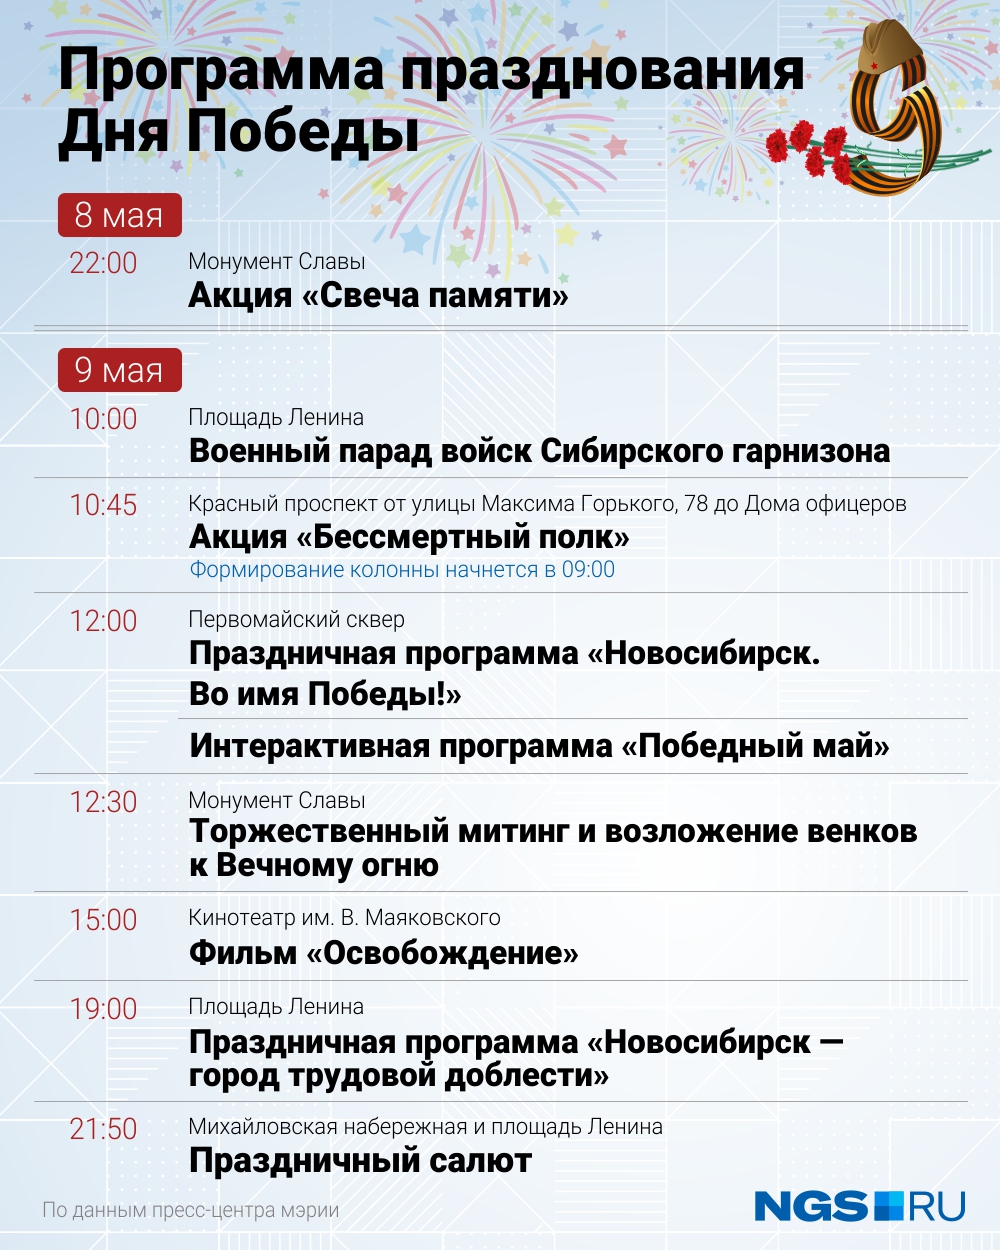 Новосибирск празднует День Победы. Смотрим, что происходит в городе